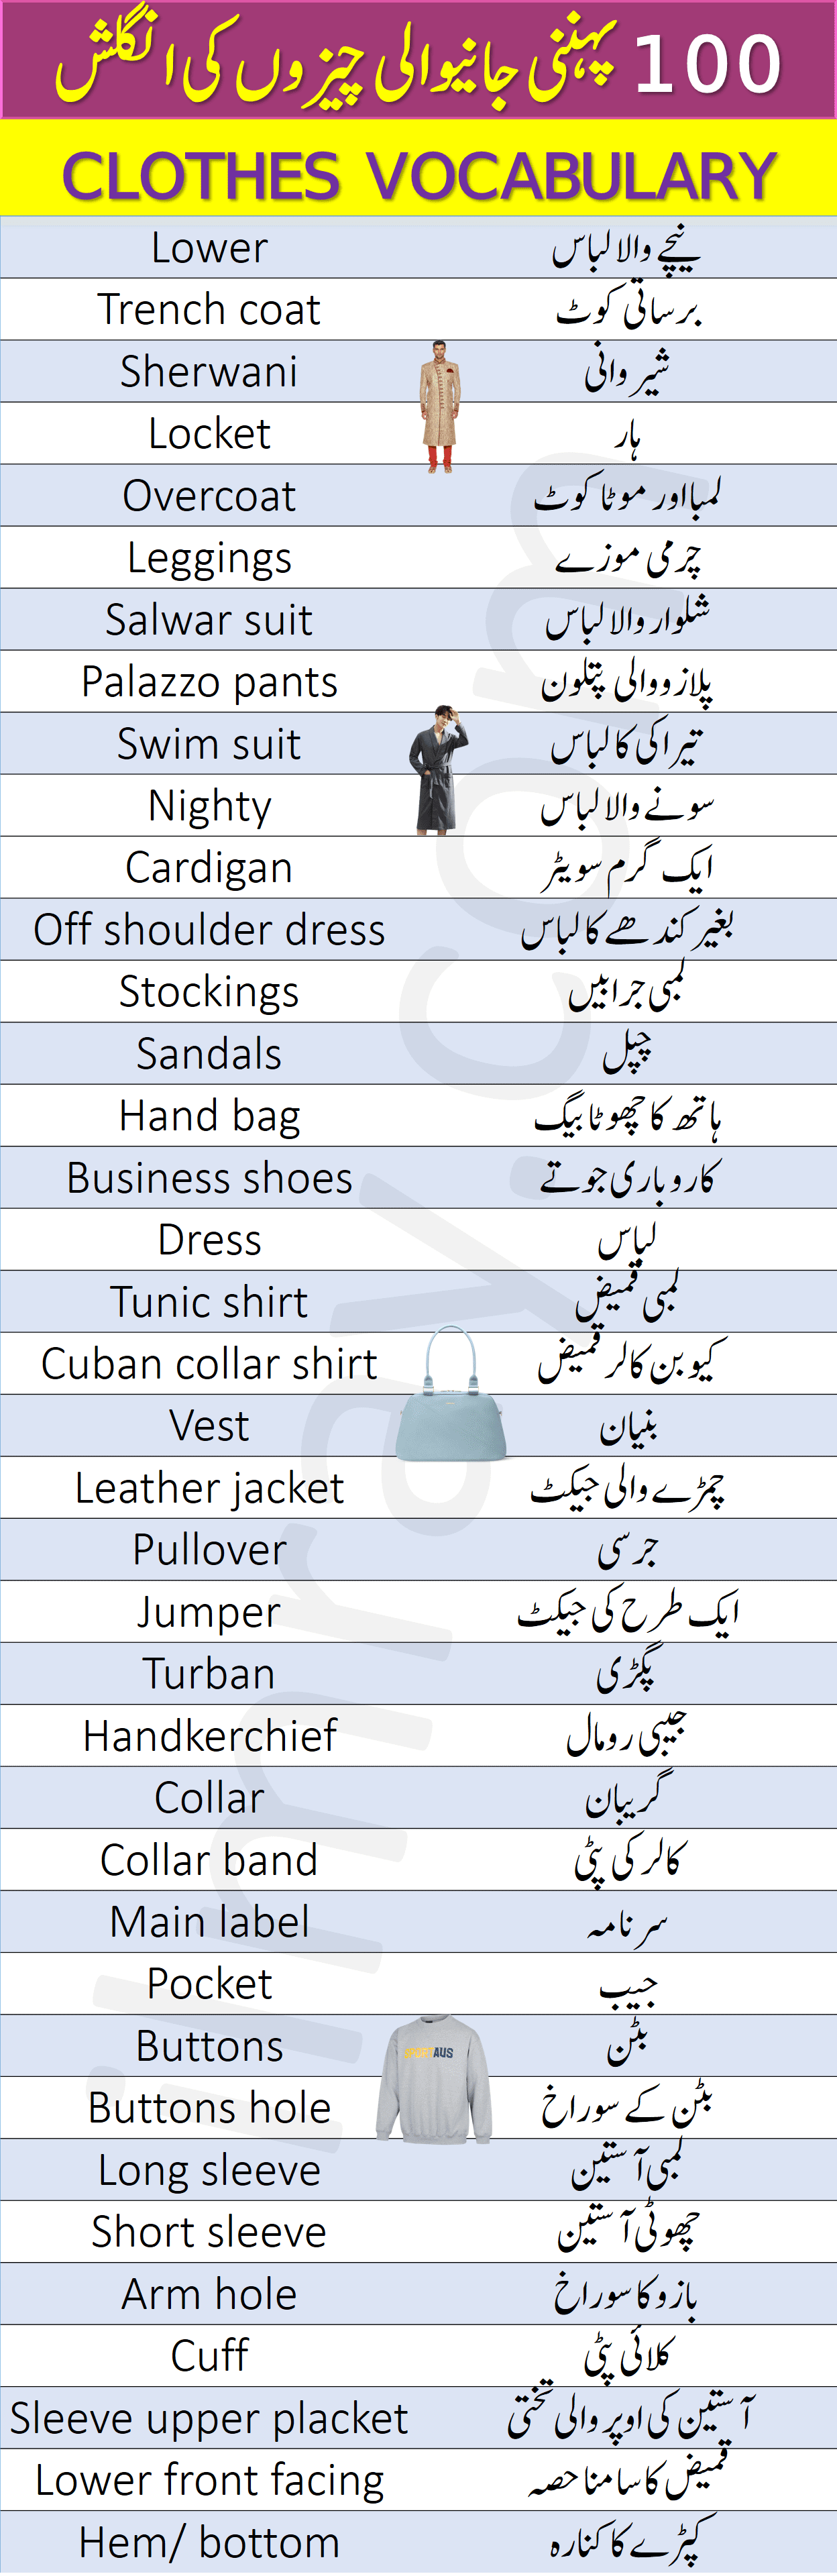 urdu essay on fashion